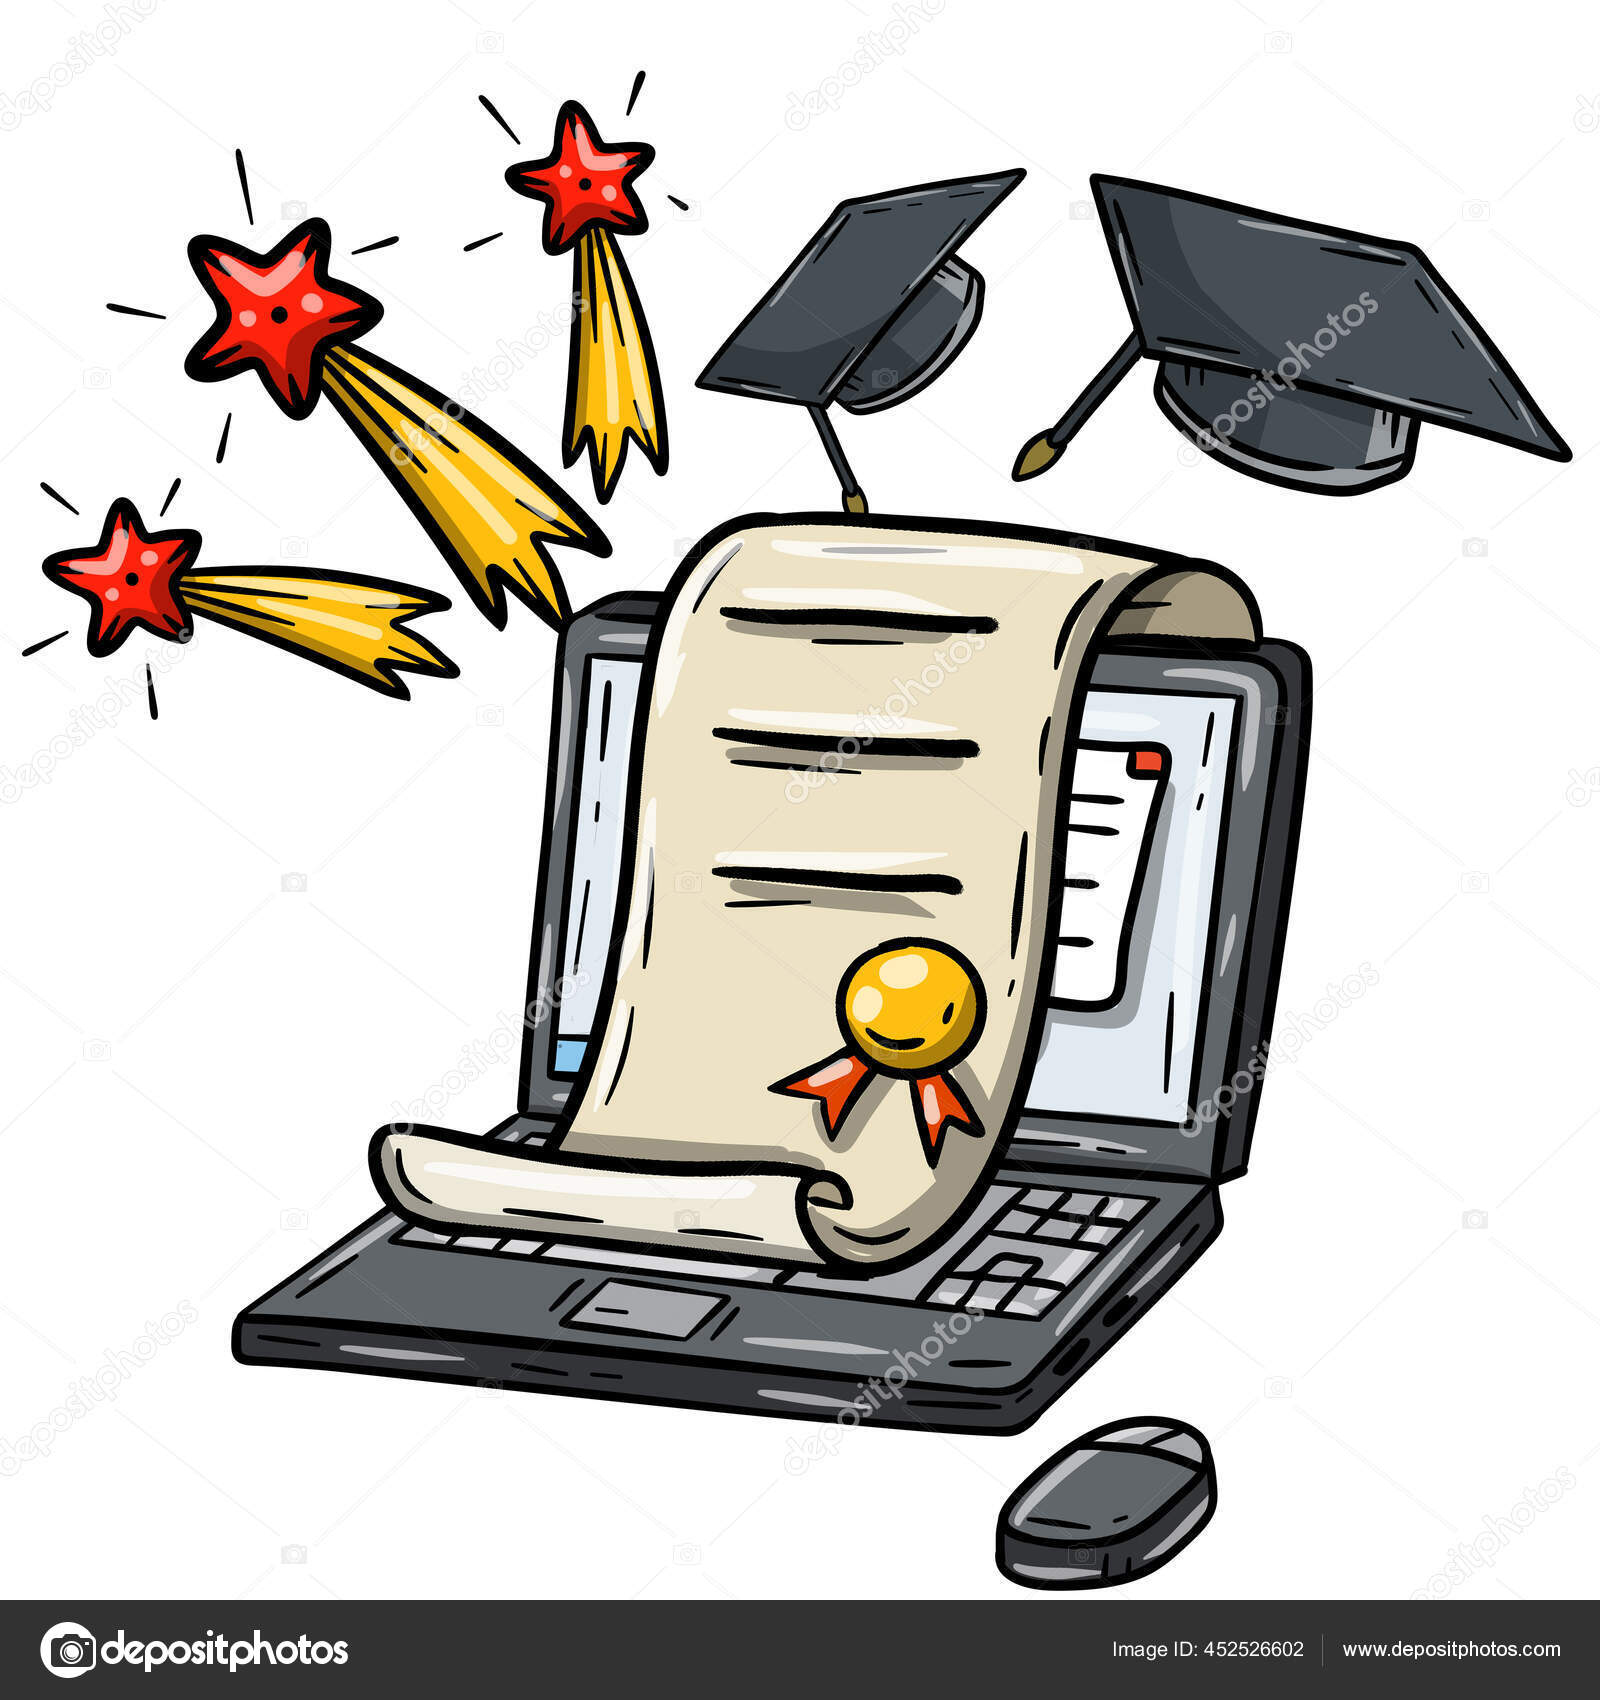 Pendidikan Rumah Belajar Jarak Jauh Komputer Dan Mendapatkan Gelar Laptop Stok Vektor Tdubov 452526602